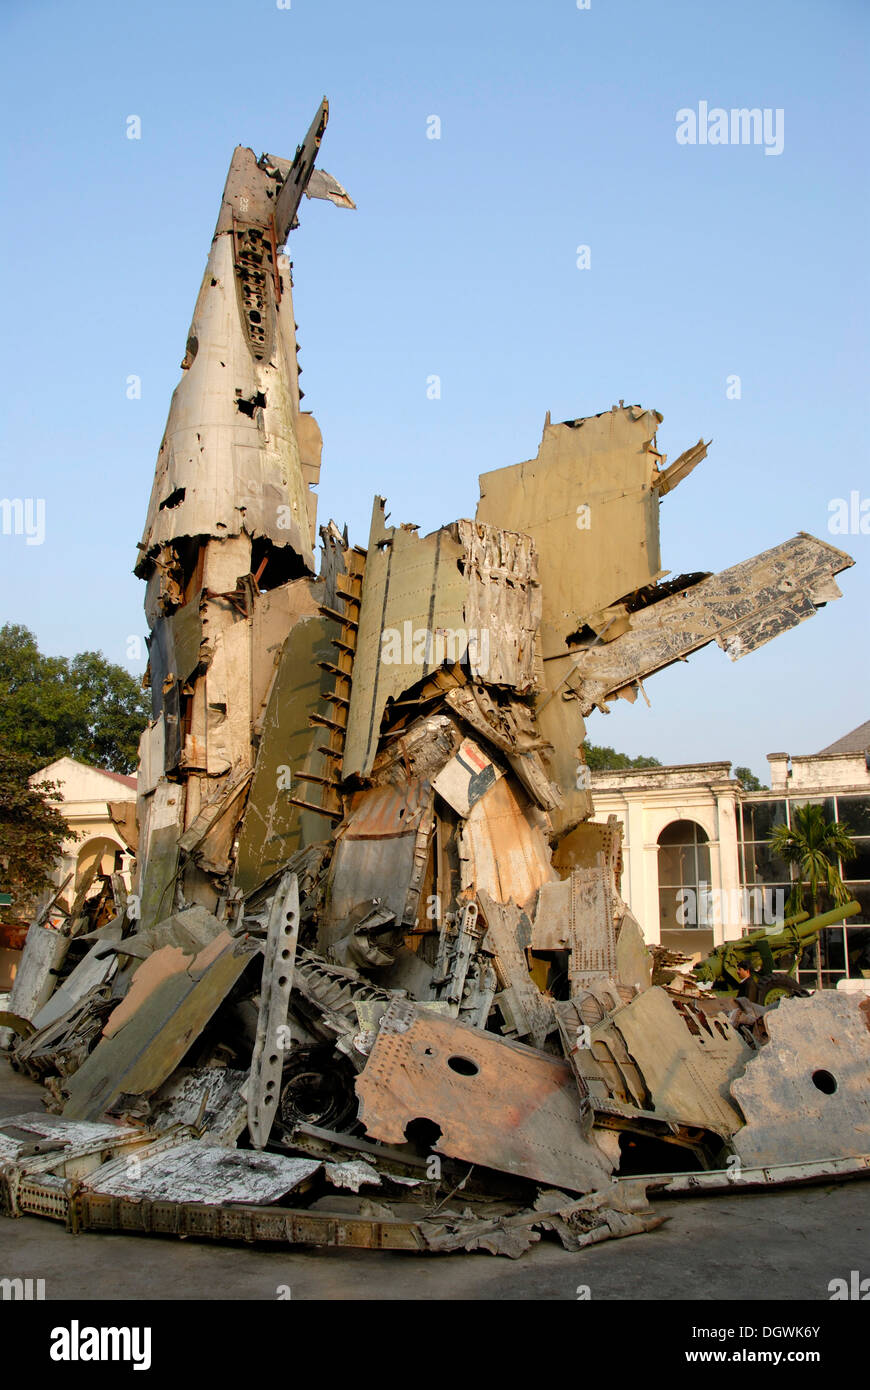 Aviones de combate estadounidenses rompieron como un memorial de la guerra de Vietnam, el Museo de Historia Militar de Vietnam, Hanoi, Vietnam, Asia Foto de stock